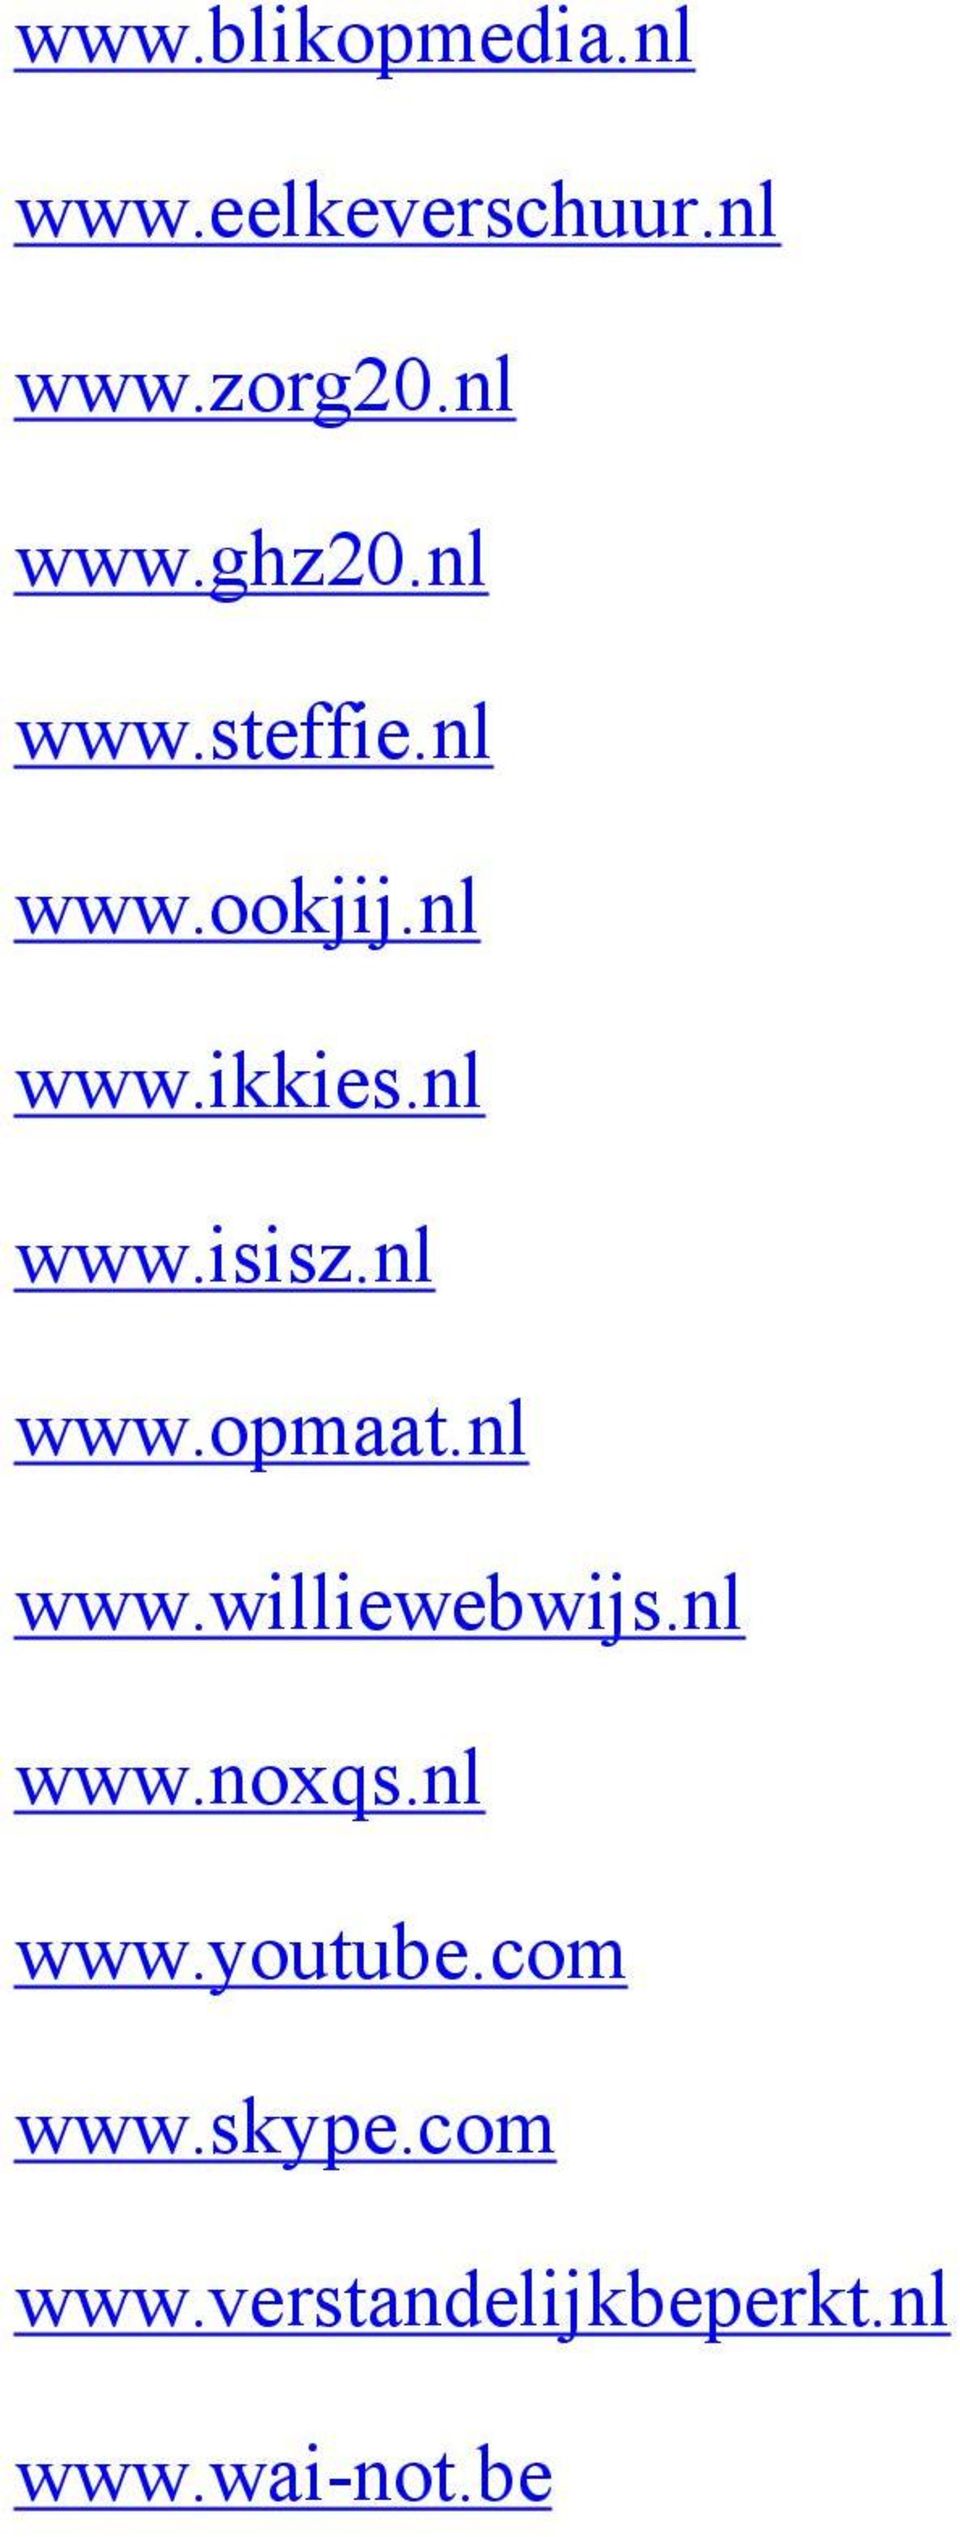 nl www.opmaat.nl www.williewebwijs.nl www.noxqs.nl www.youtube.